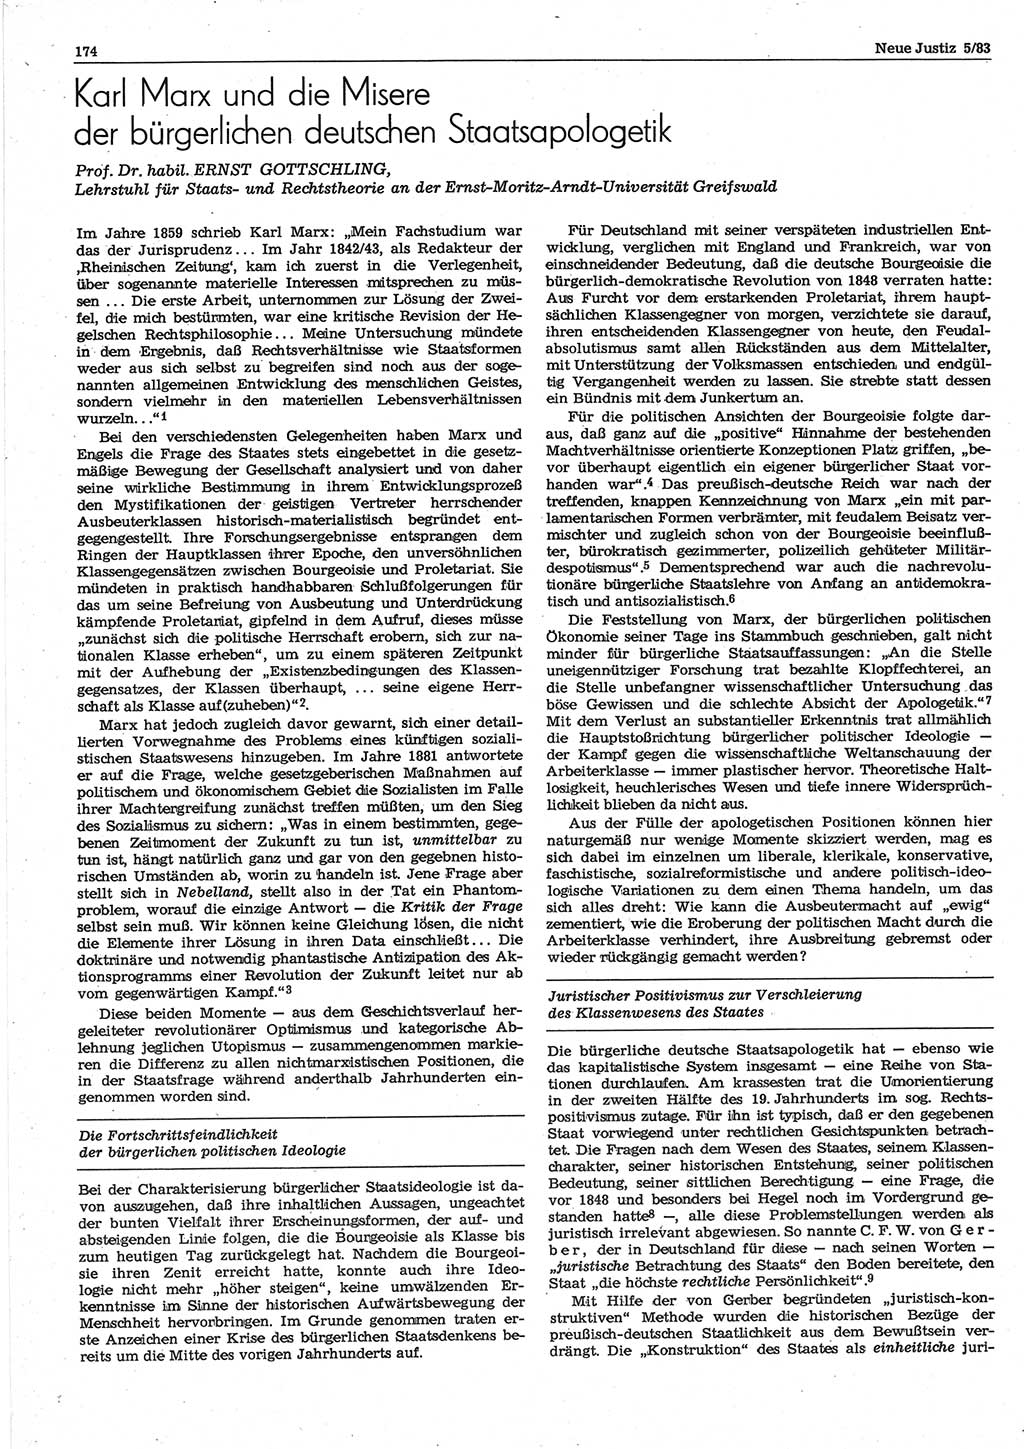 Neue Justiz (NJ), Zeitschrift für sozialistisches Recht und Gesetzlichkeit [Deutsche Demokratische Republik (DDR)], 37. Jahrgang 1983, Seite 174 (NJ DDR 1983, S. 174)